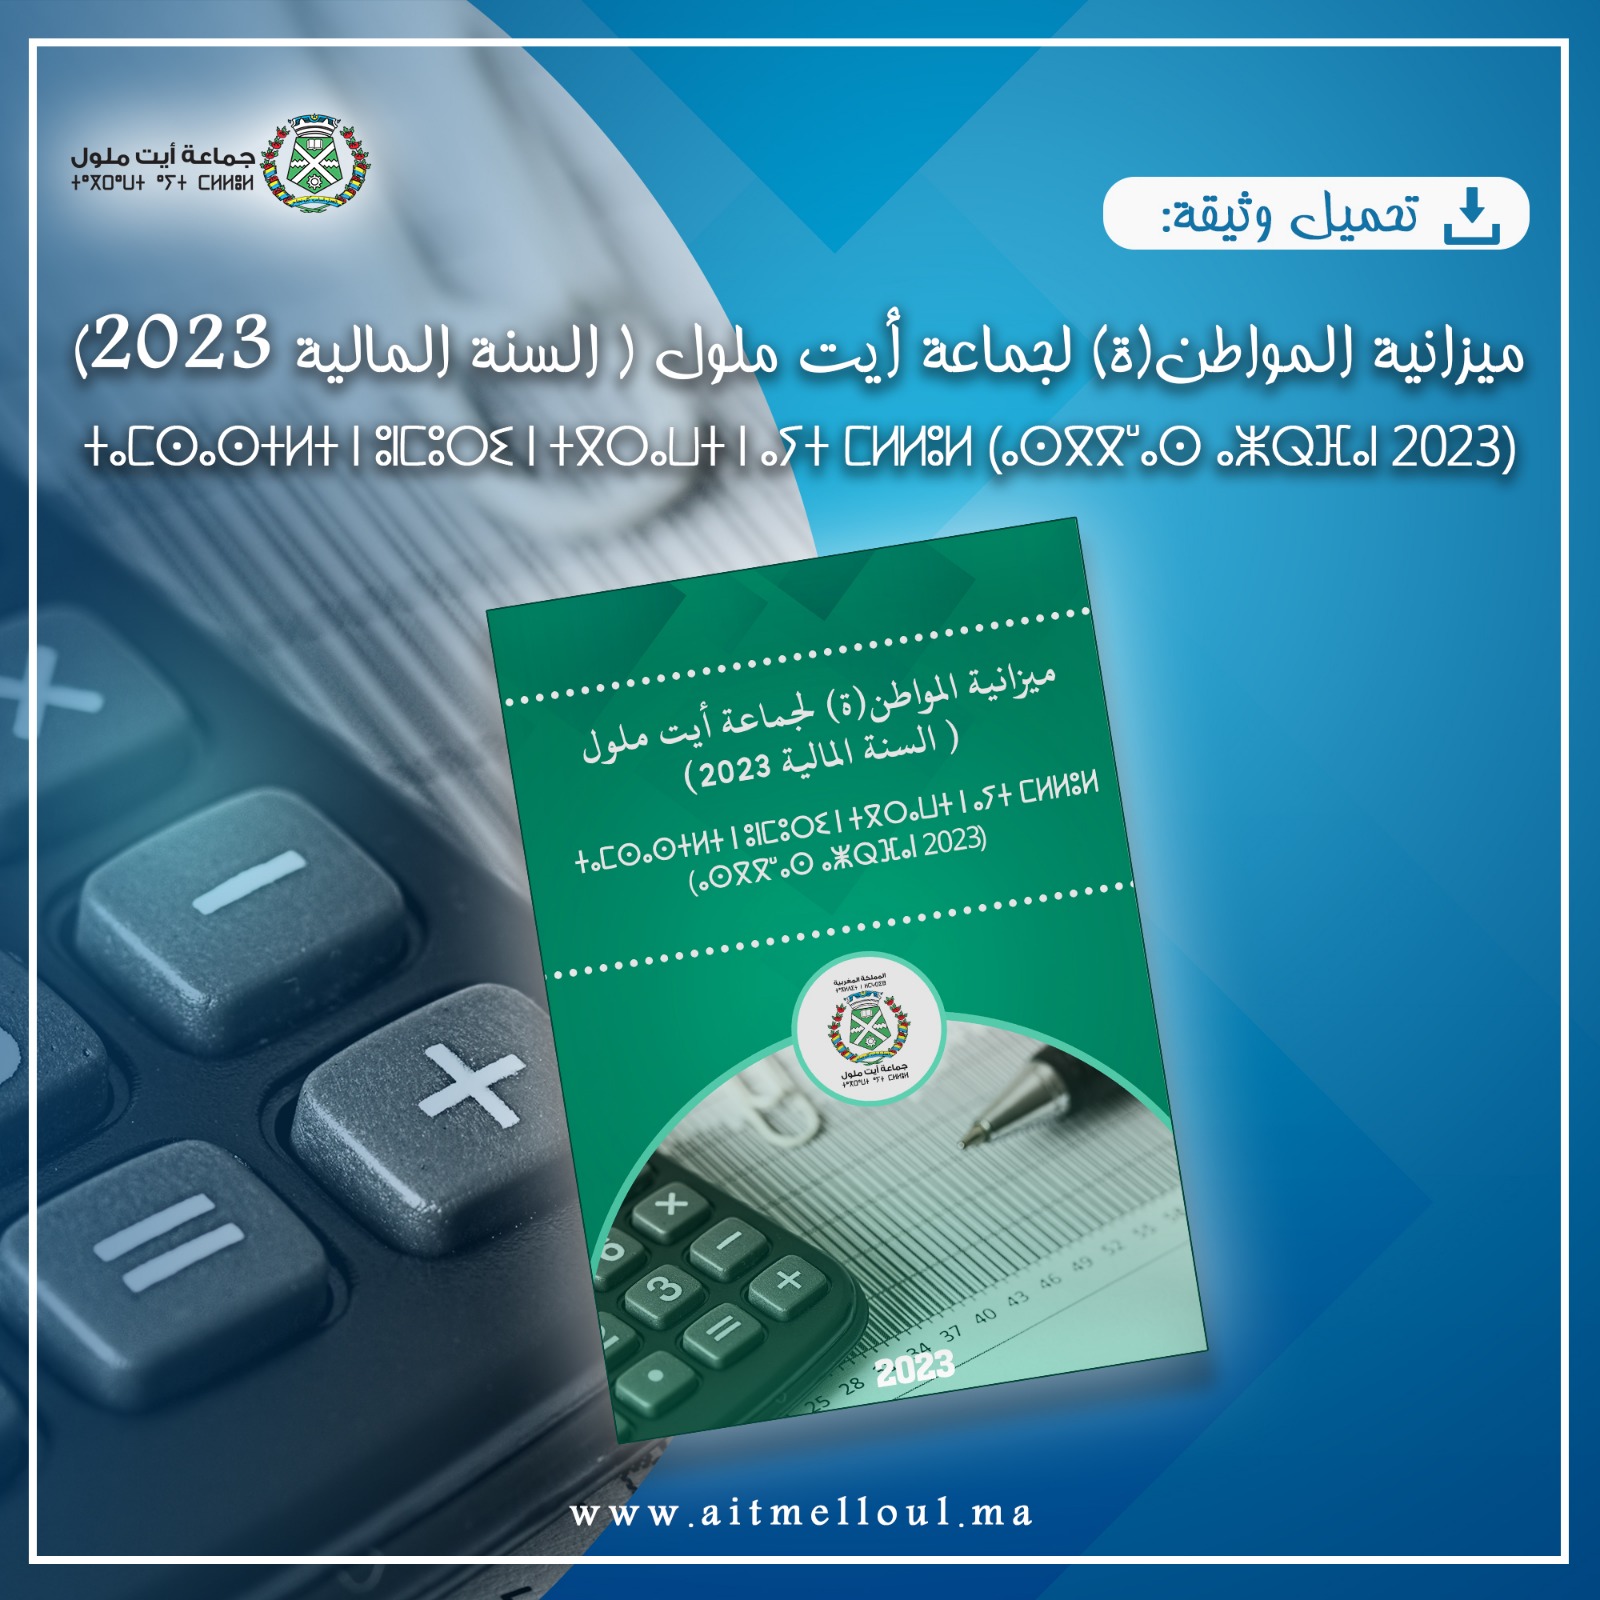 ميزانية المواطن (ة) لجماعة أيت ملول (السنة المالية 2023) ⵜⴰⵎⵙⴰⵙⵜⵍⵜ ⵏ ⵓⵏⵎⵓⵔⵉ ⵏ ⵜⴳⵔⴰⵡⵜ ⵏ ⴰⵢⵜ ⵎⵍⵍⵓⵍ (ⴰⵙⴳⴳⵯⴰⵙ ⴰⵥⵕⴼⴰⵏ 2023)